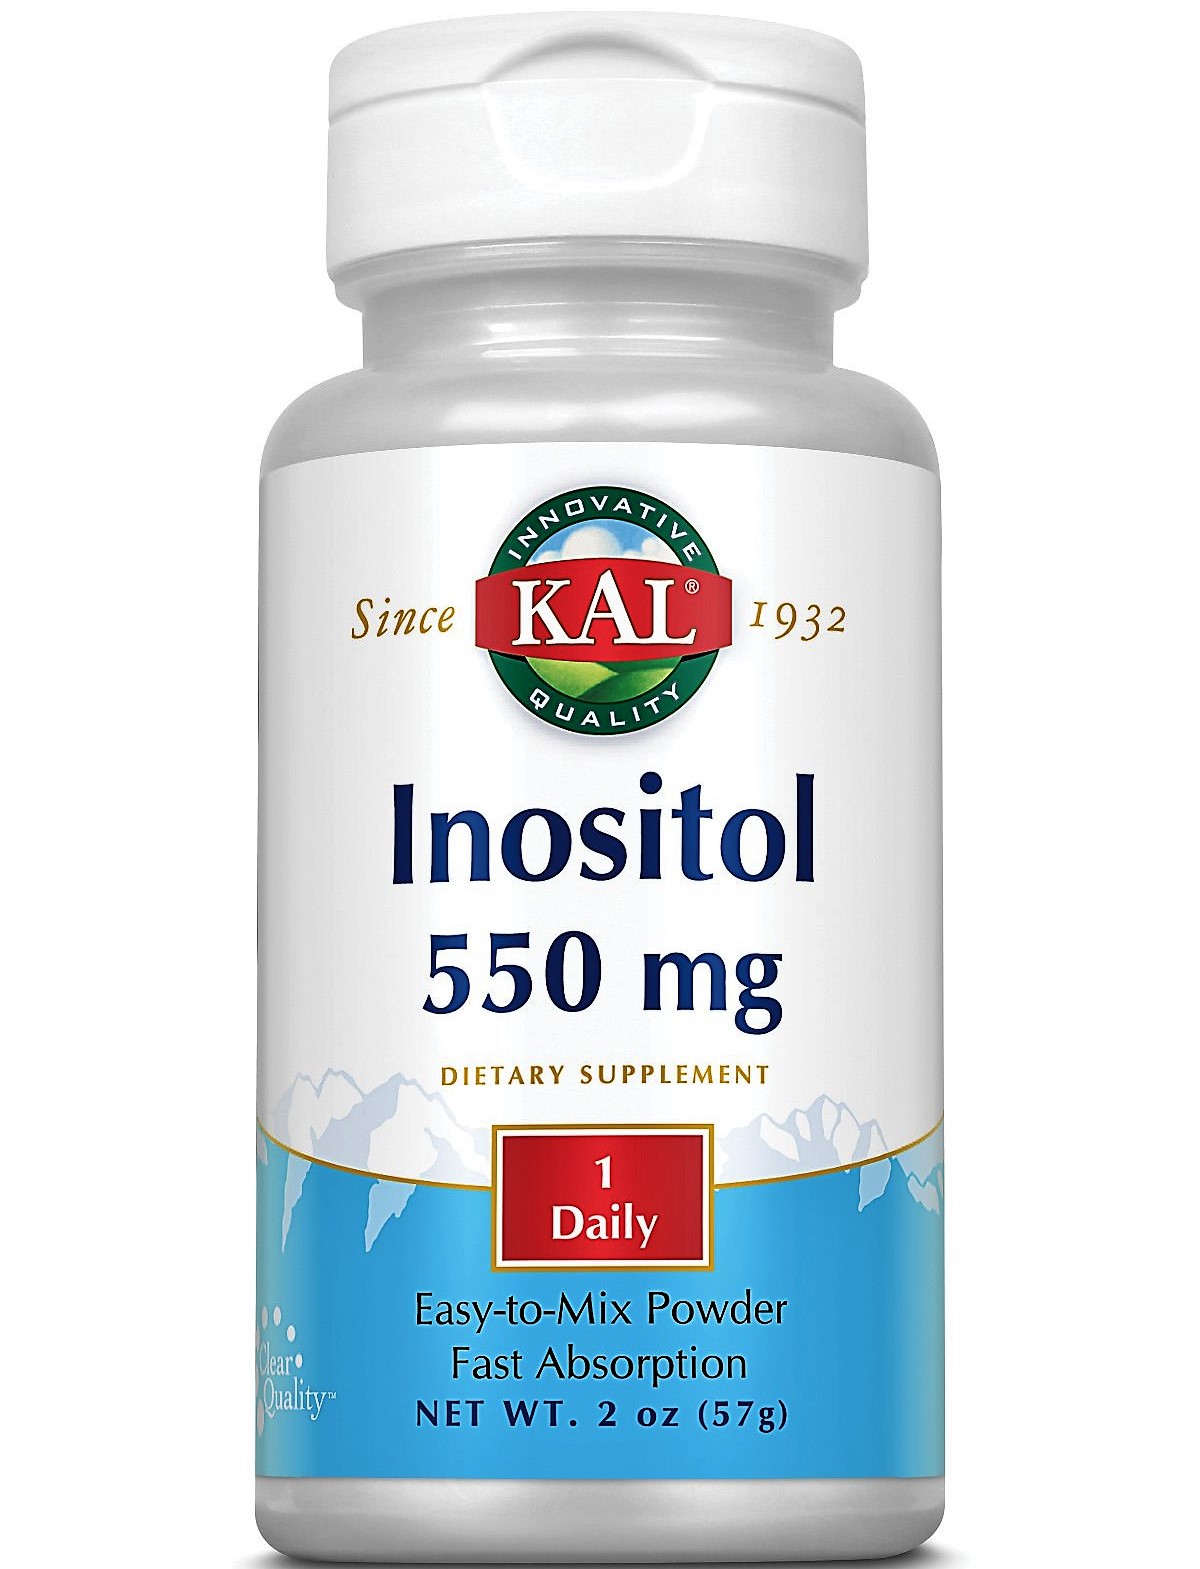 Polvo de inositol KAL. Un compuesto que se encuentra naturalmente en el cuerpo, el inositol puede ayudar a respaldar la función cerebral y nerviosa, la salud cardiovascular y más.